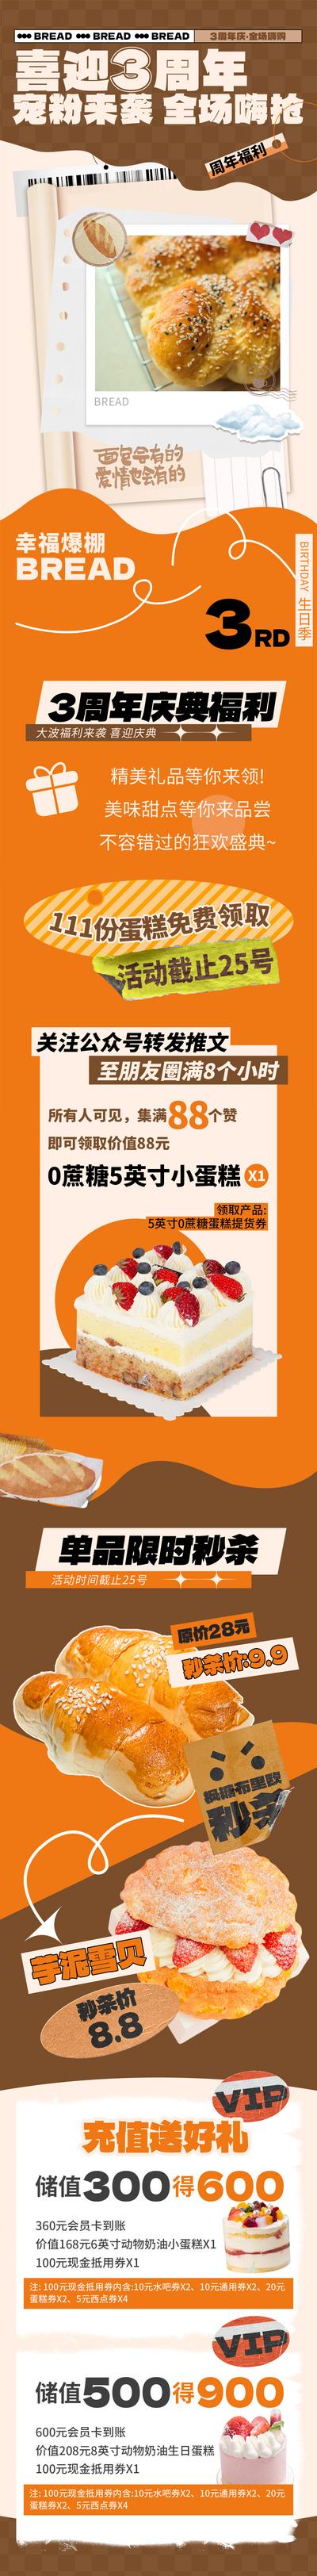 南门网 海报 长图 烘焙 面包店 周年庆 宠粉 福利 活动